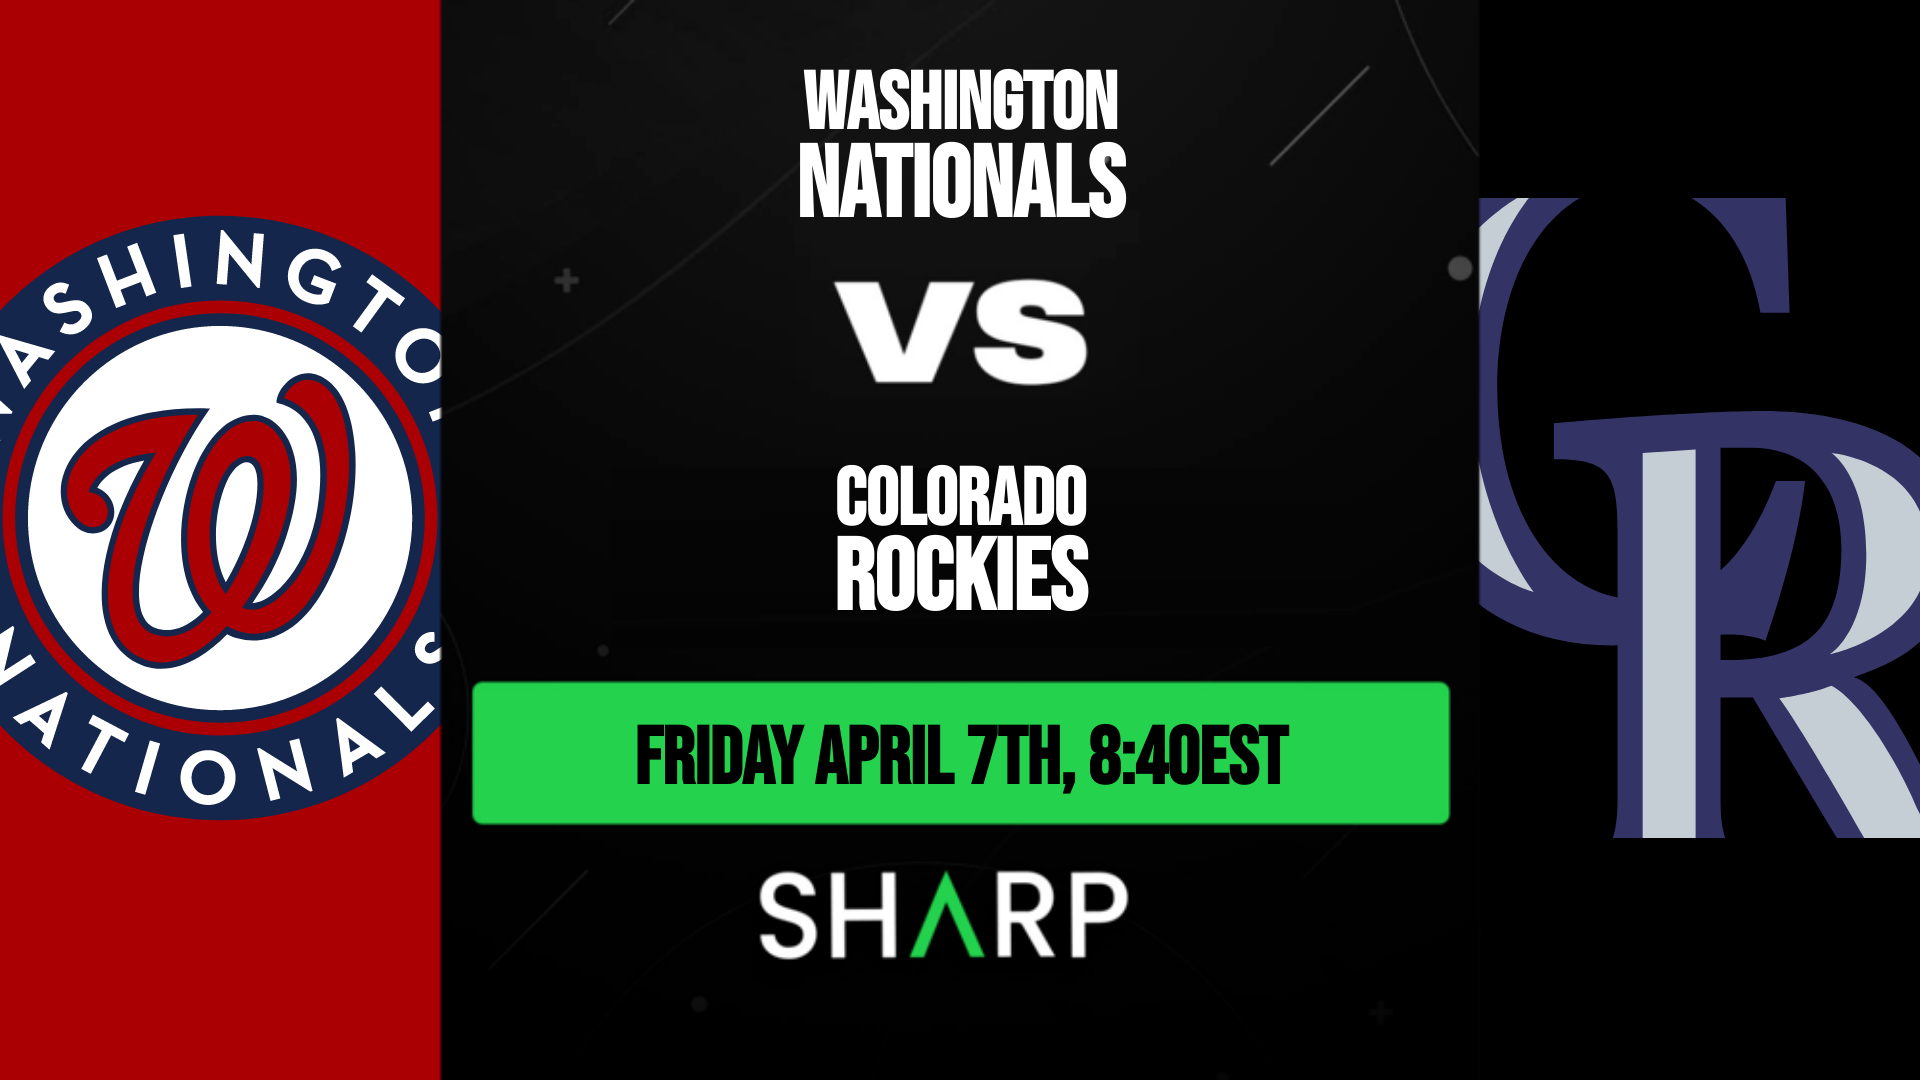 Washington Nationals vs Colorado Rockies